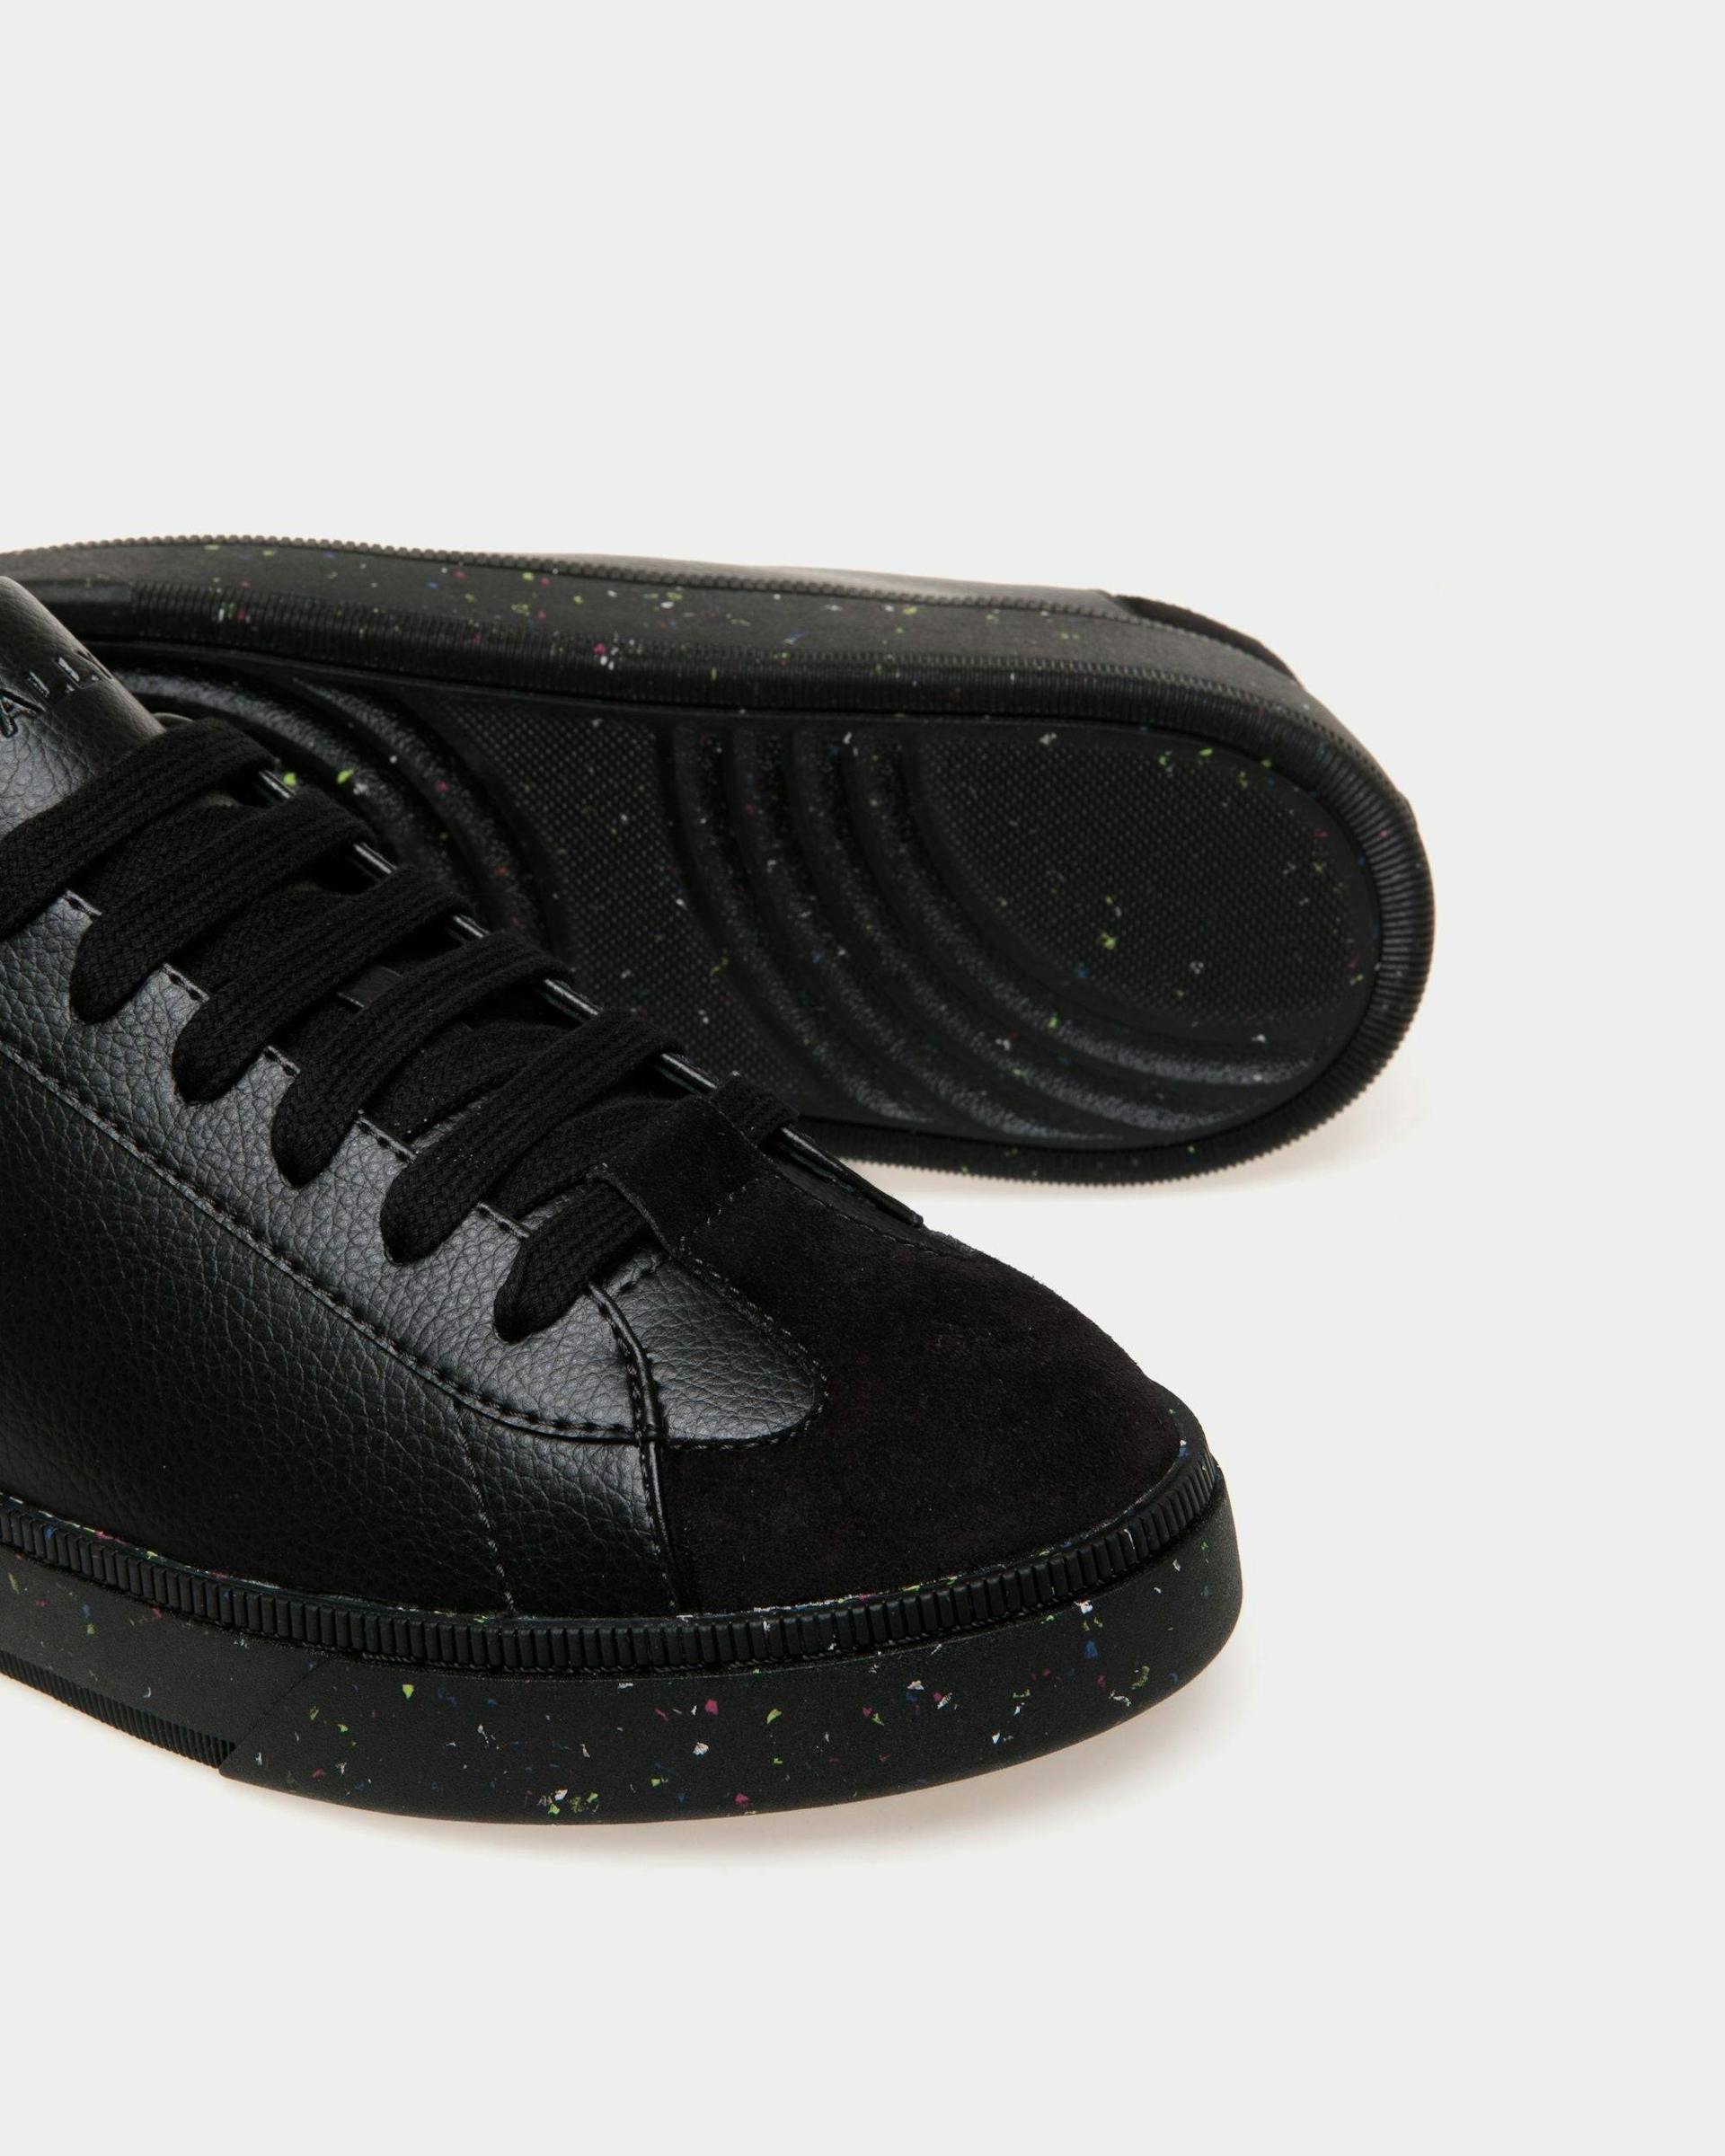 Men's Raise Sneaker in Faux Leather | Bally | Still Life Below